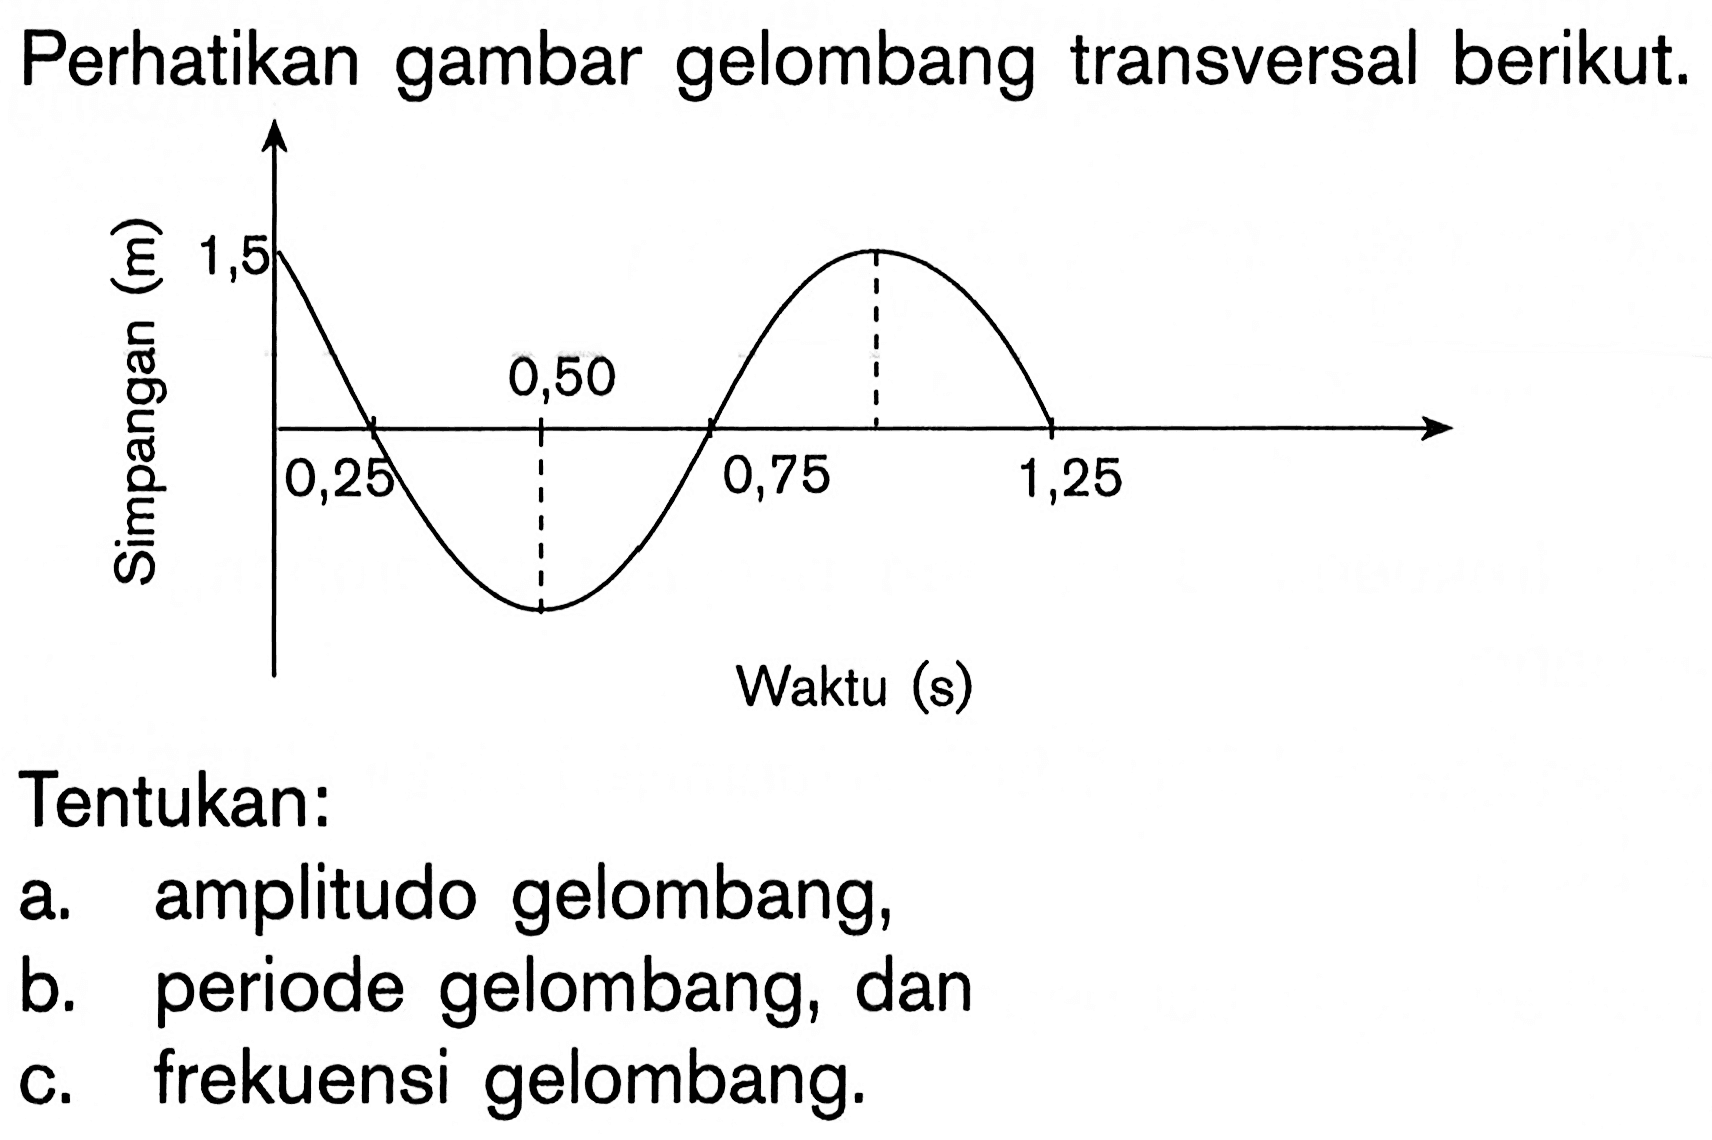 Perhatikan gambar gelombang transversal berikut.Tentukan:a. amplitudo gelombang,b. periode gelombang, danc. frekuensi gelombang.